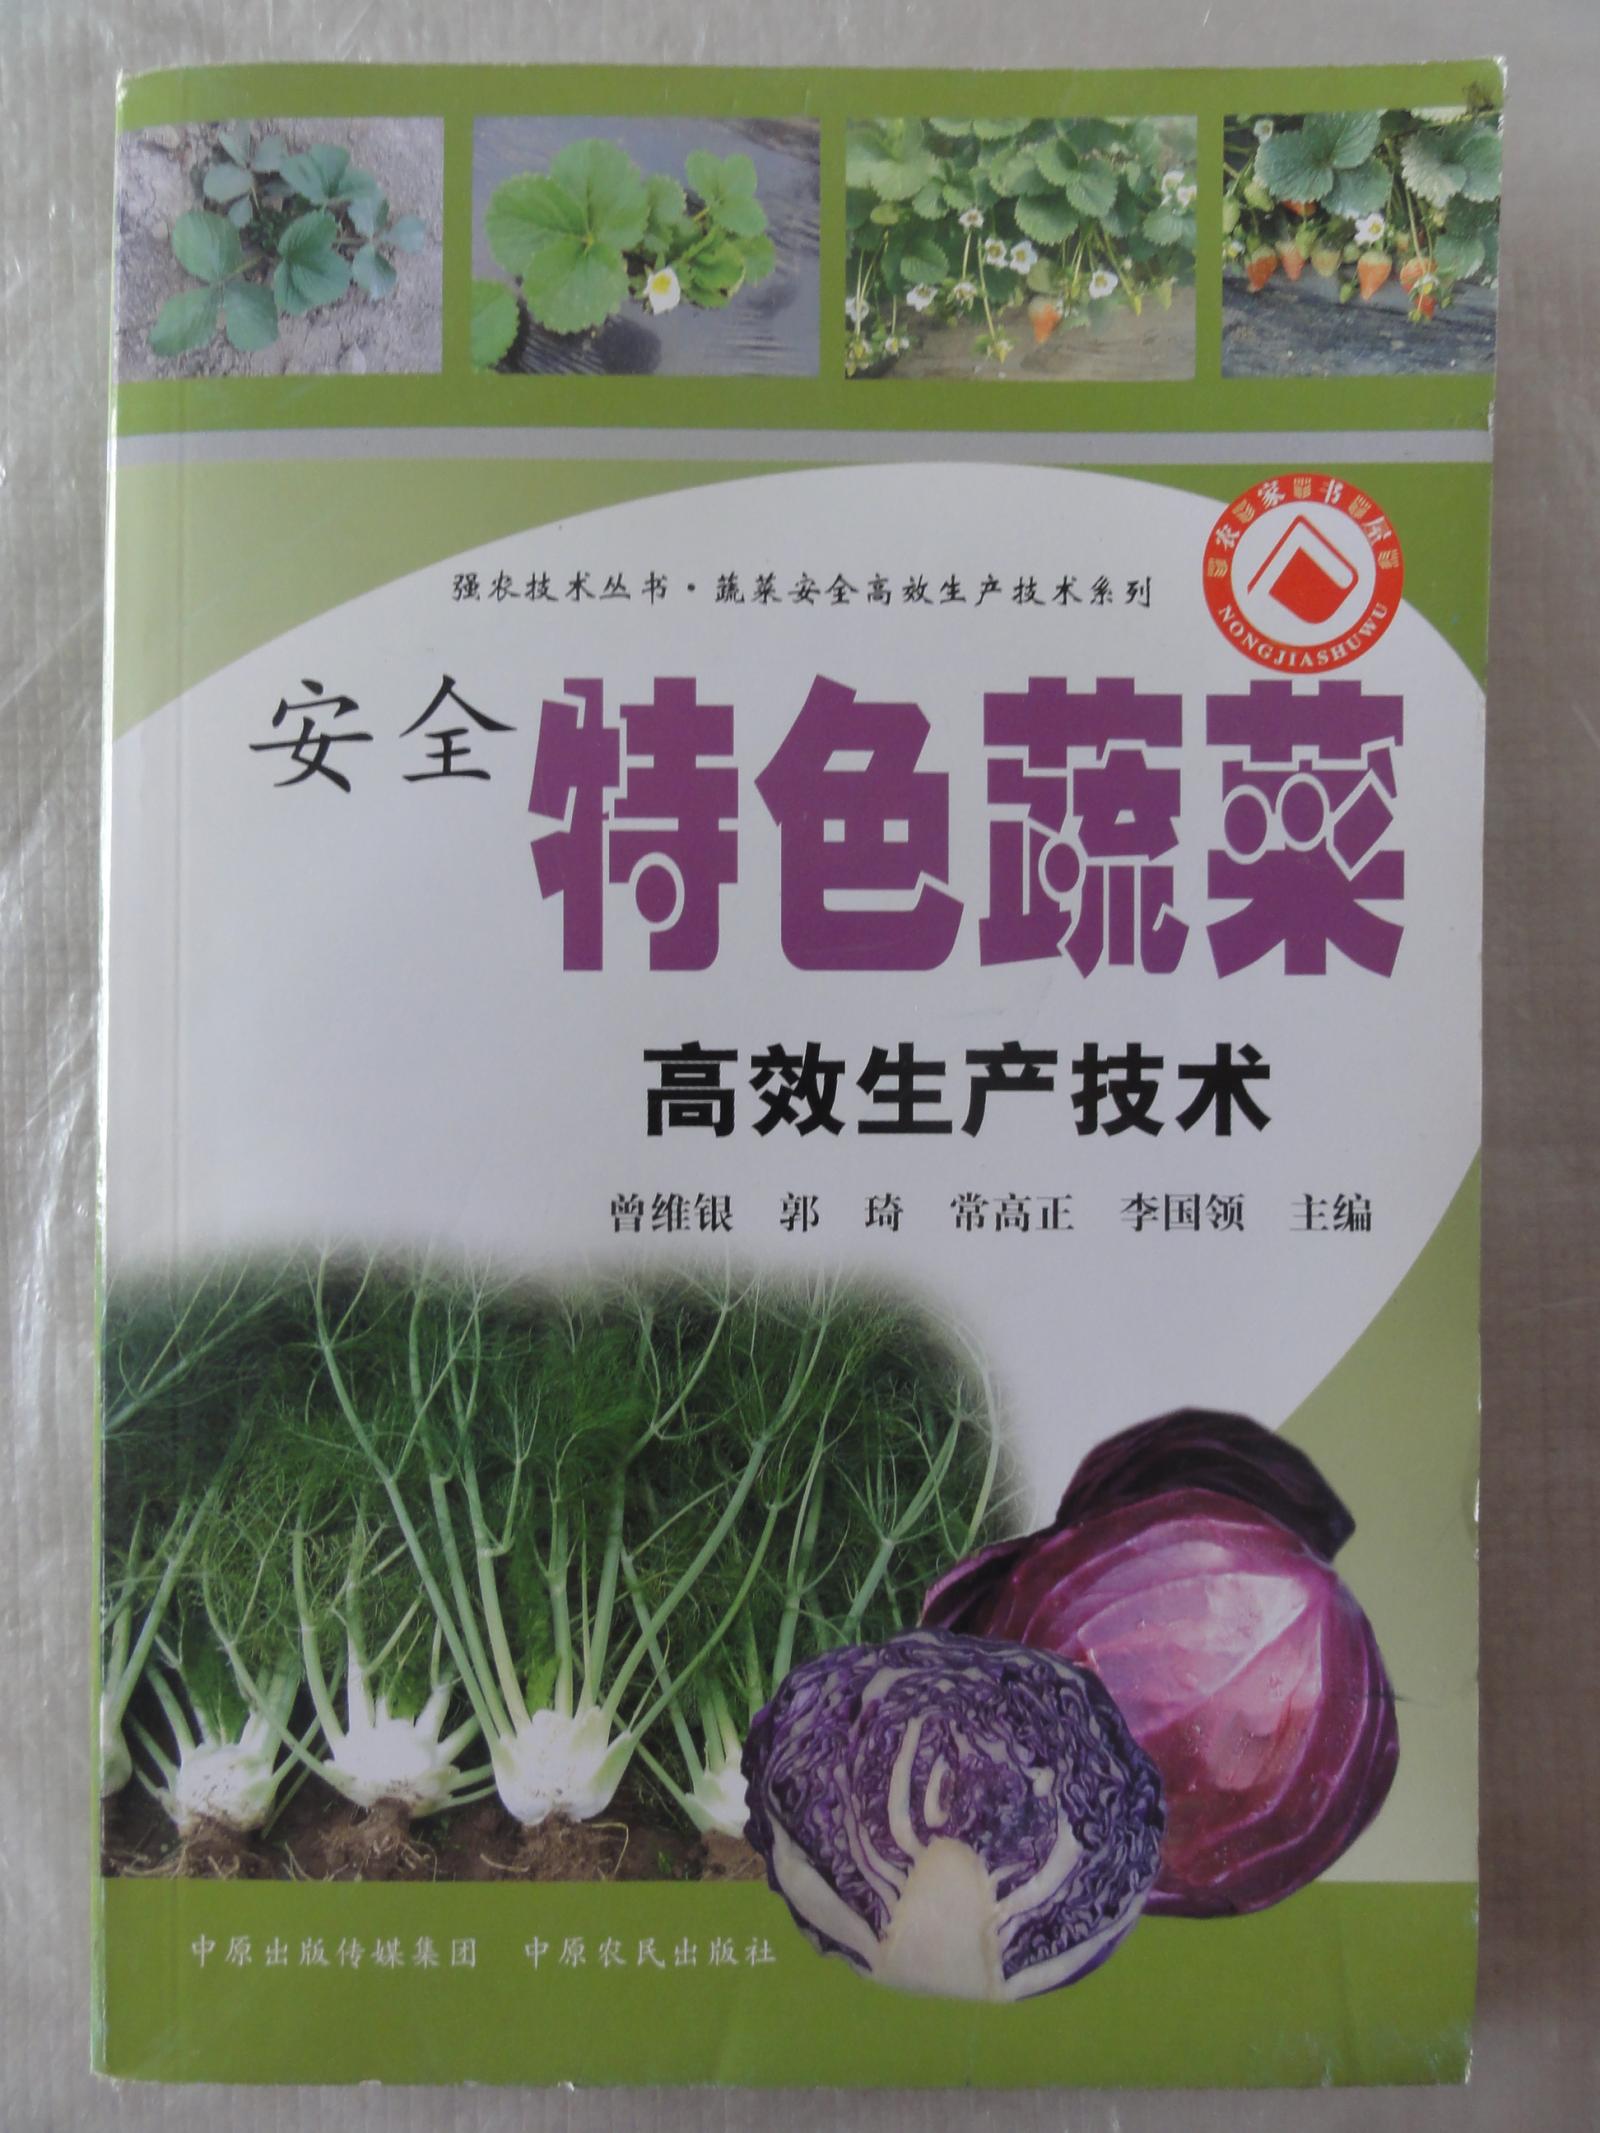 安全特色蔬菜高效生产技术·蔬菜安全高效生产技术系列·强农技术丛书